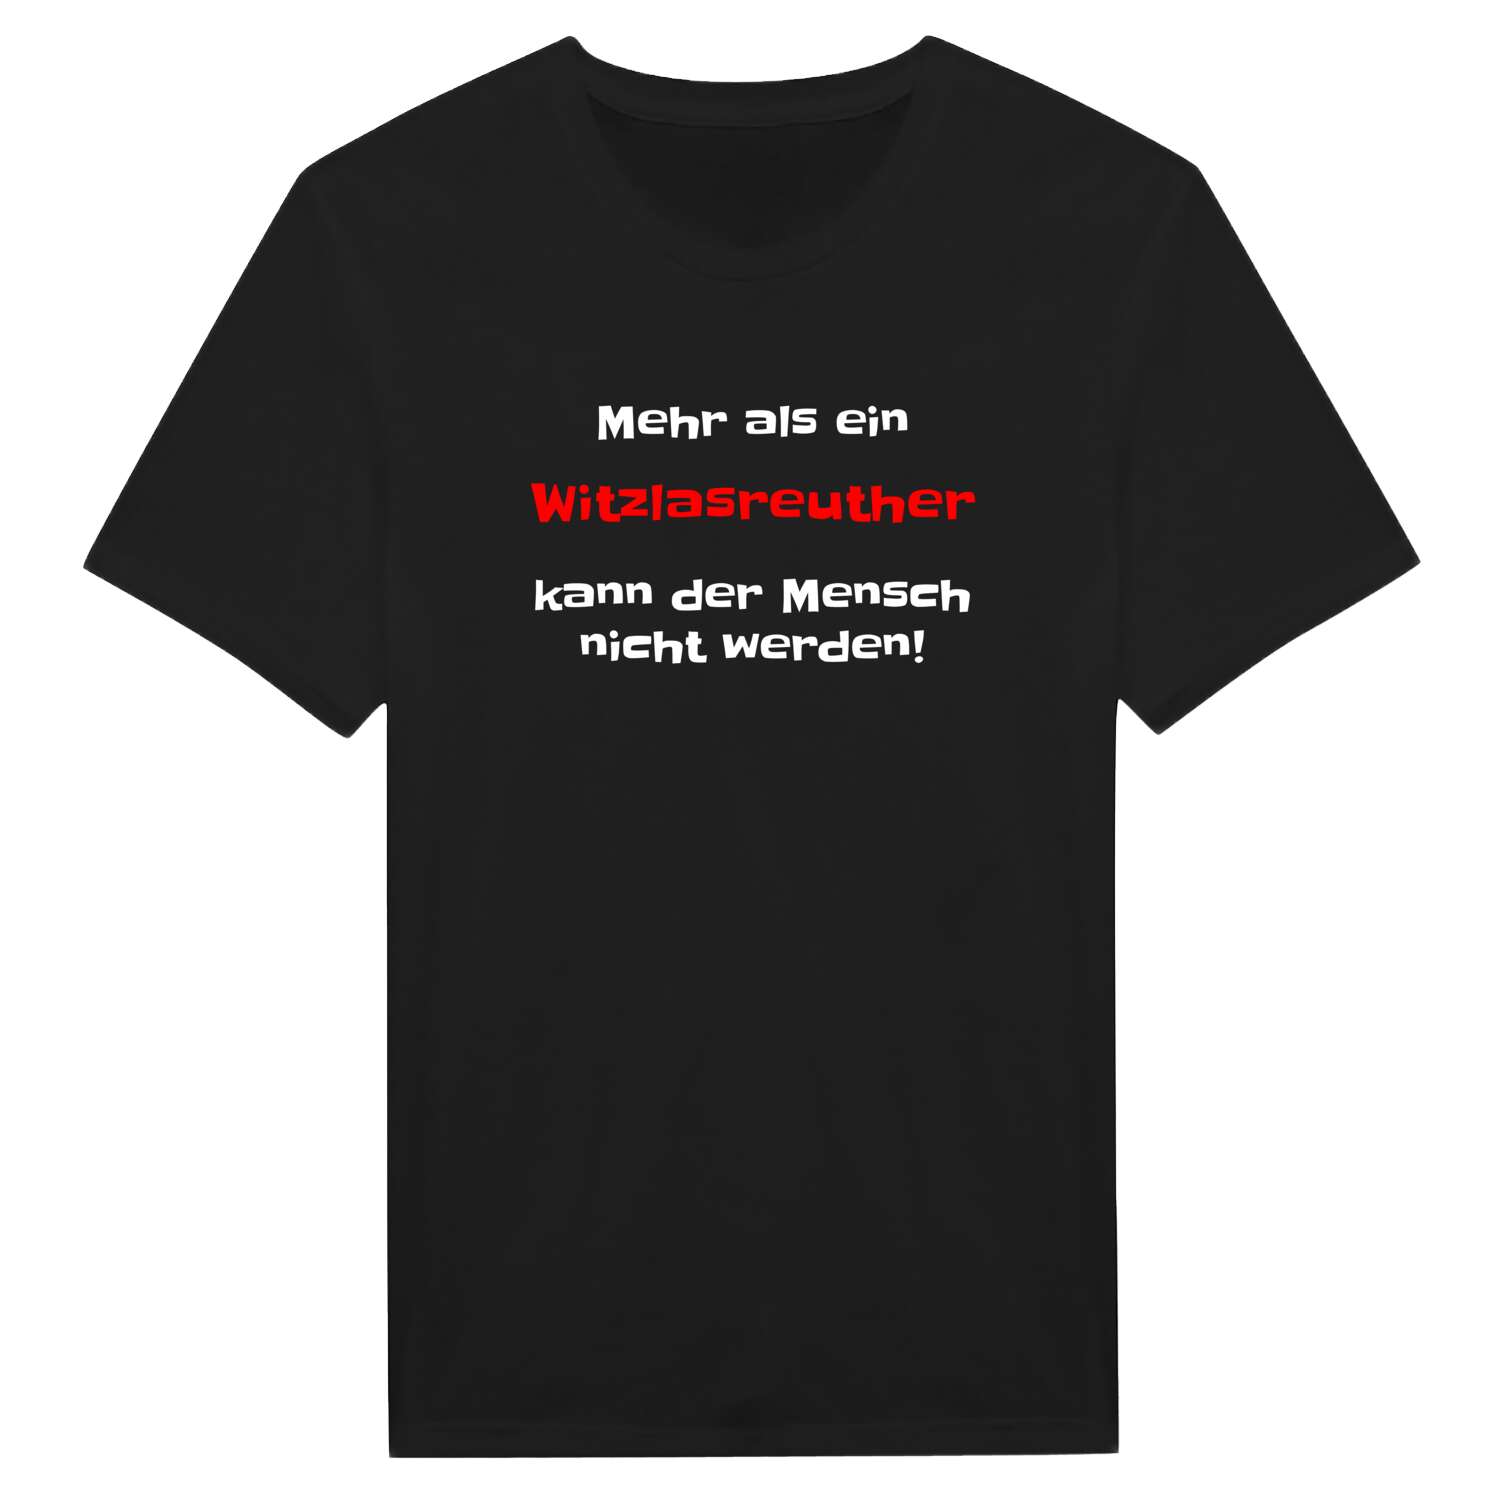 Witzlasreuth T-Shirt »Mehr als ein«